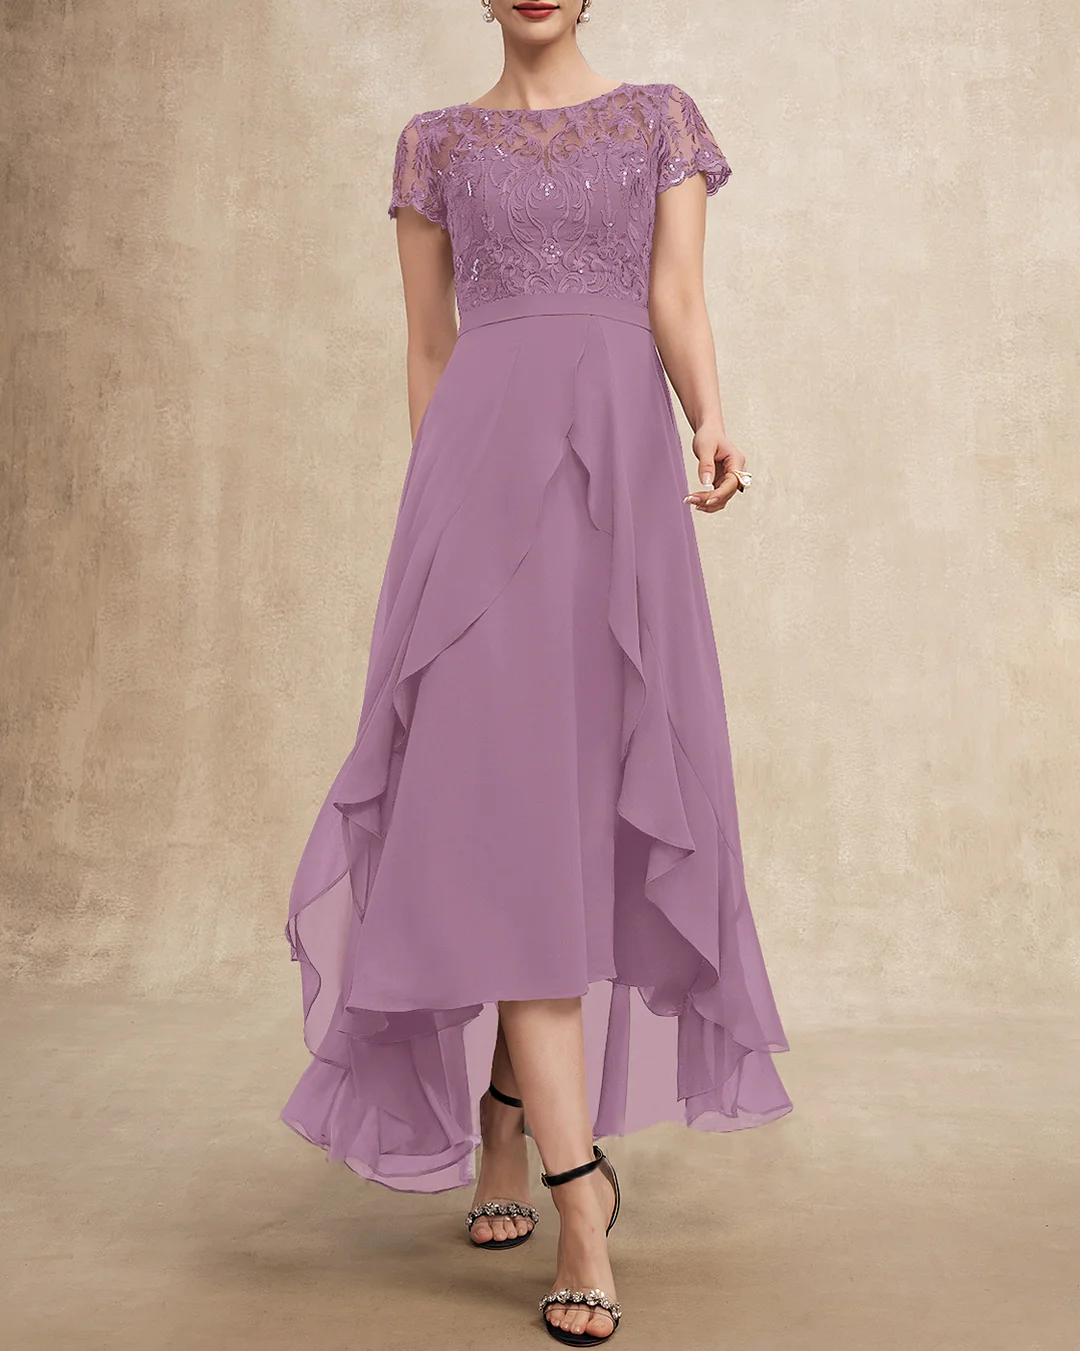 Elegant Lace Chiffon Dress